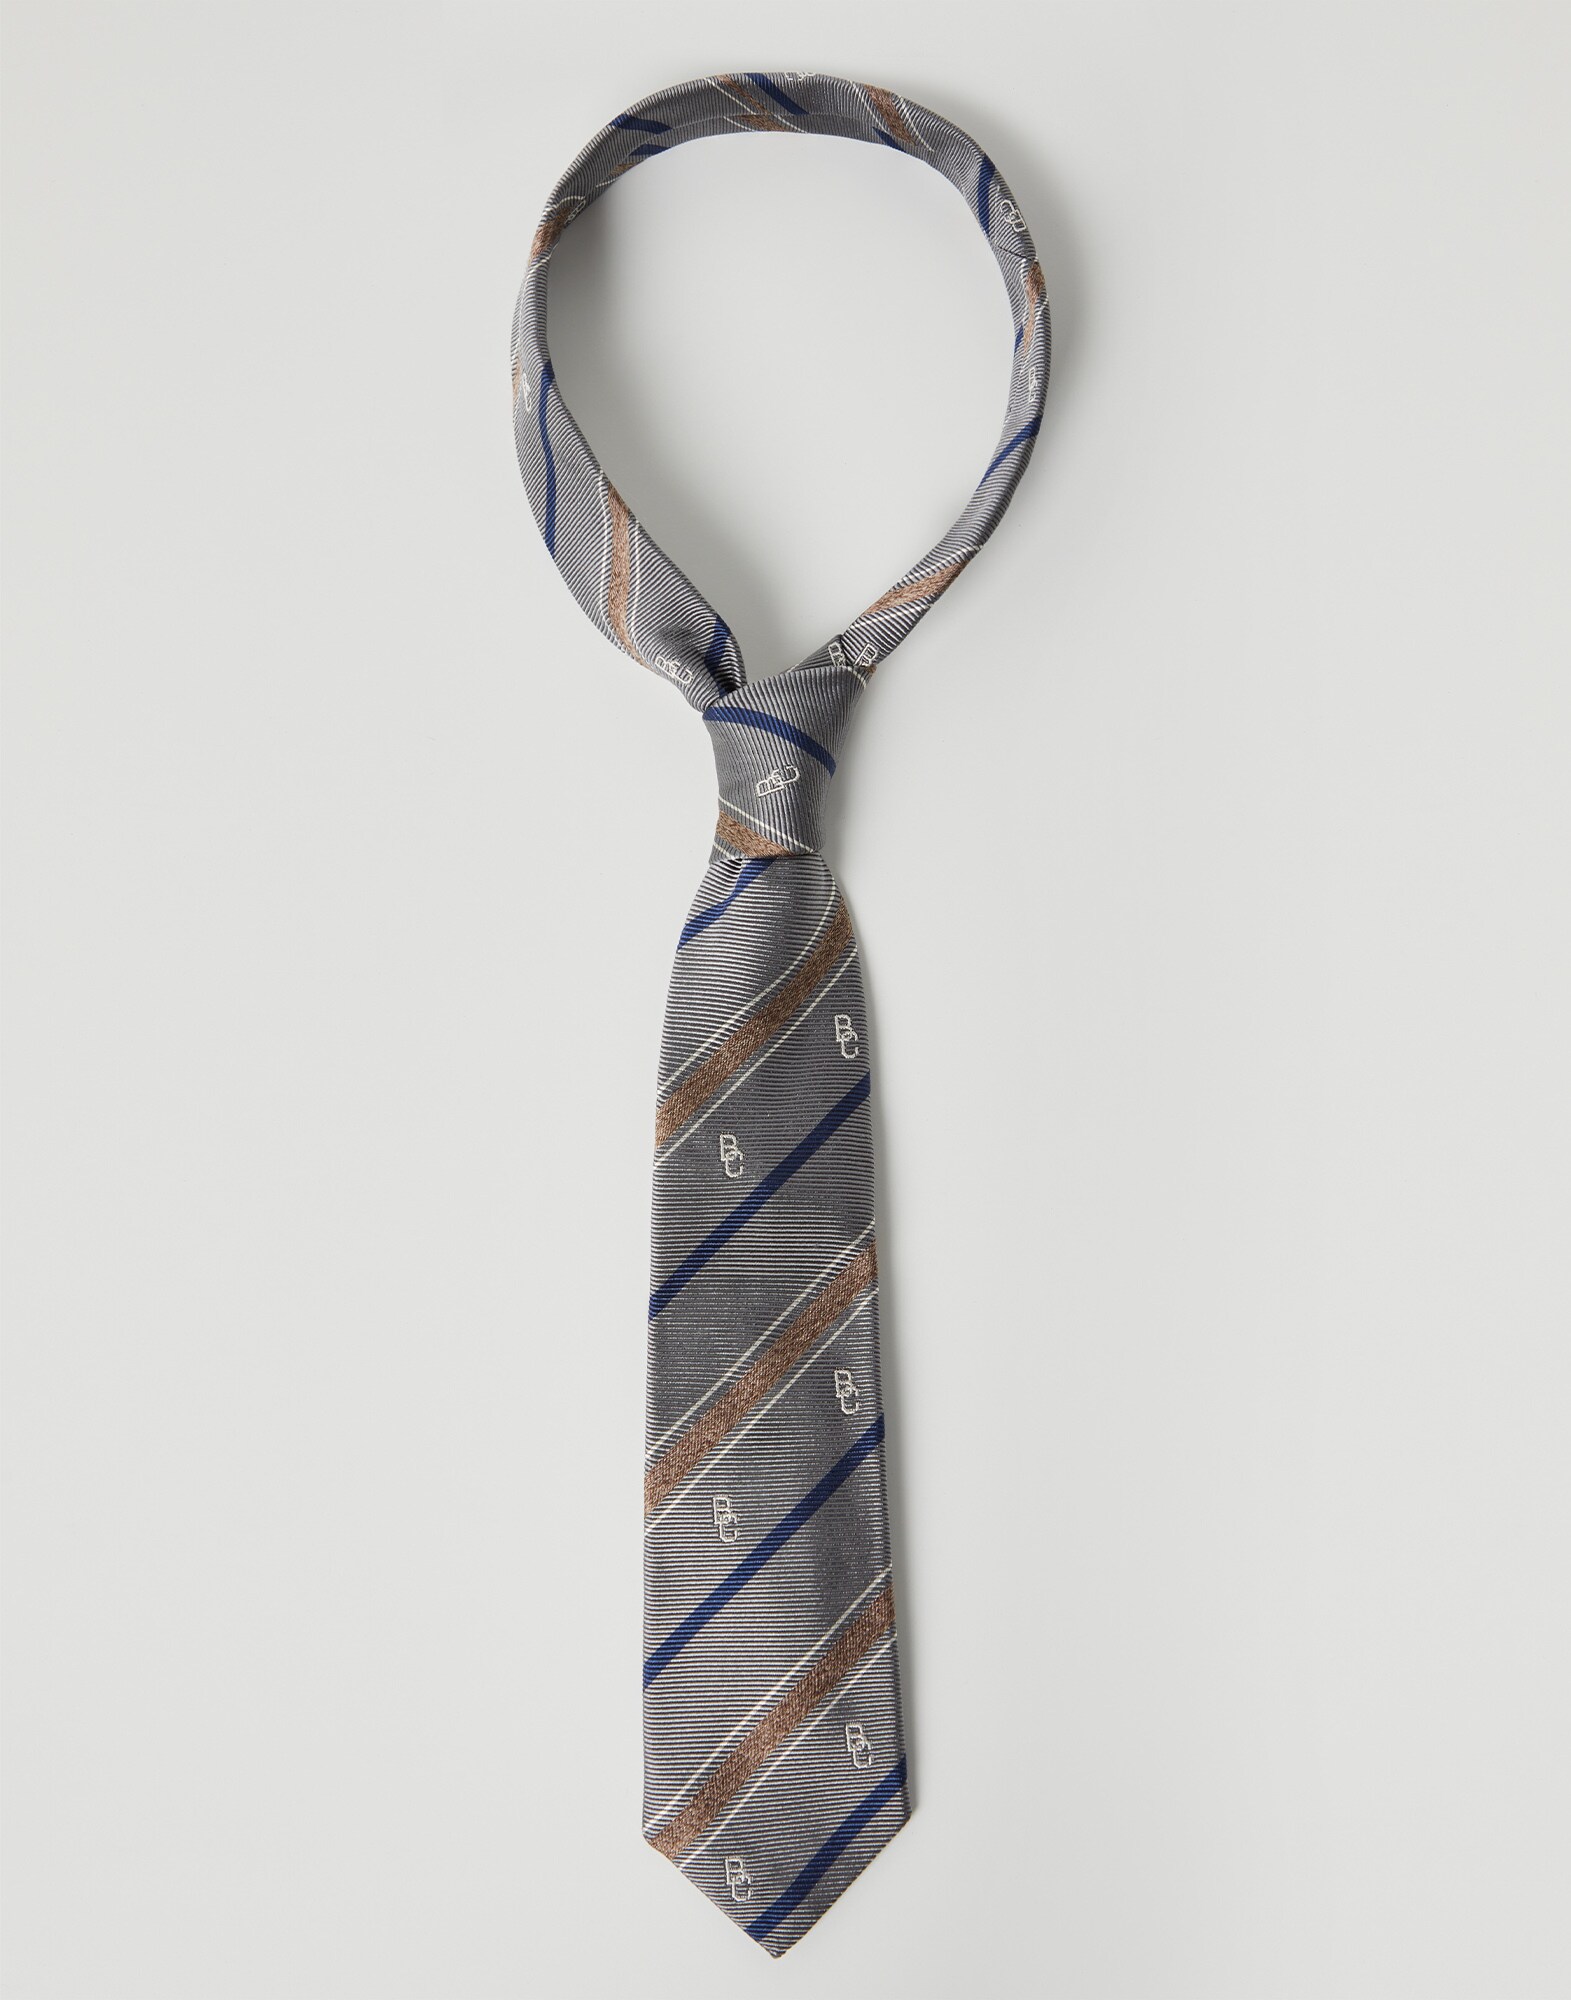 Silk necktie